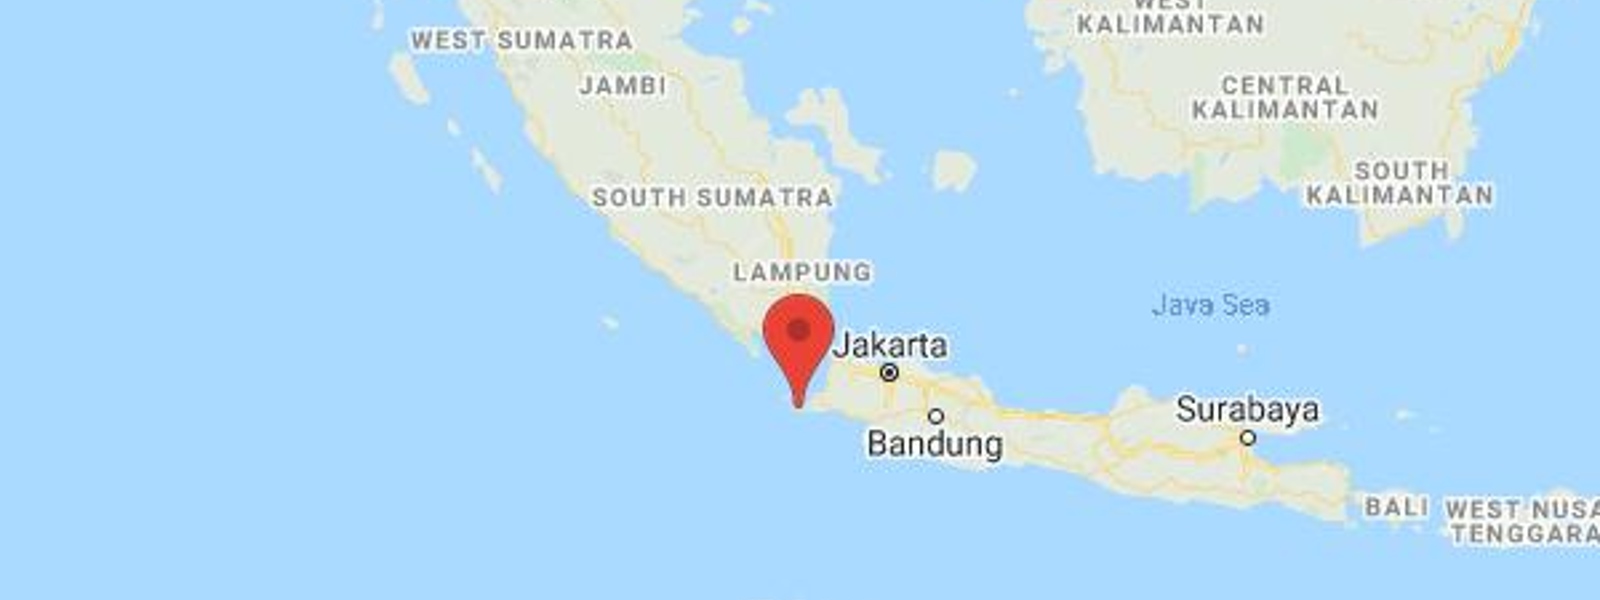 Level 3 earthquake occurs in seas off Indonesia